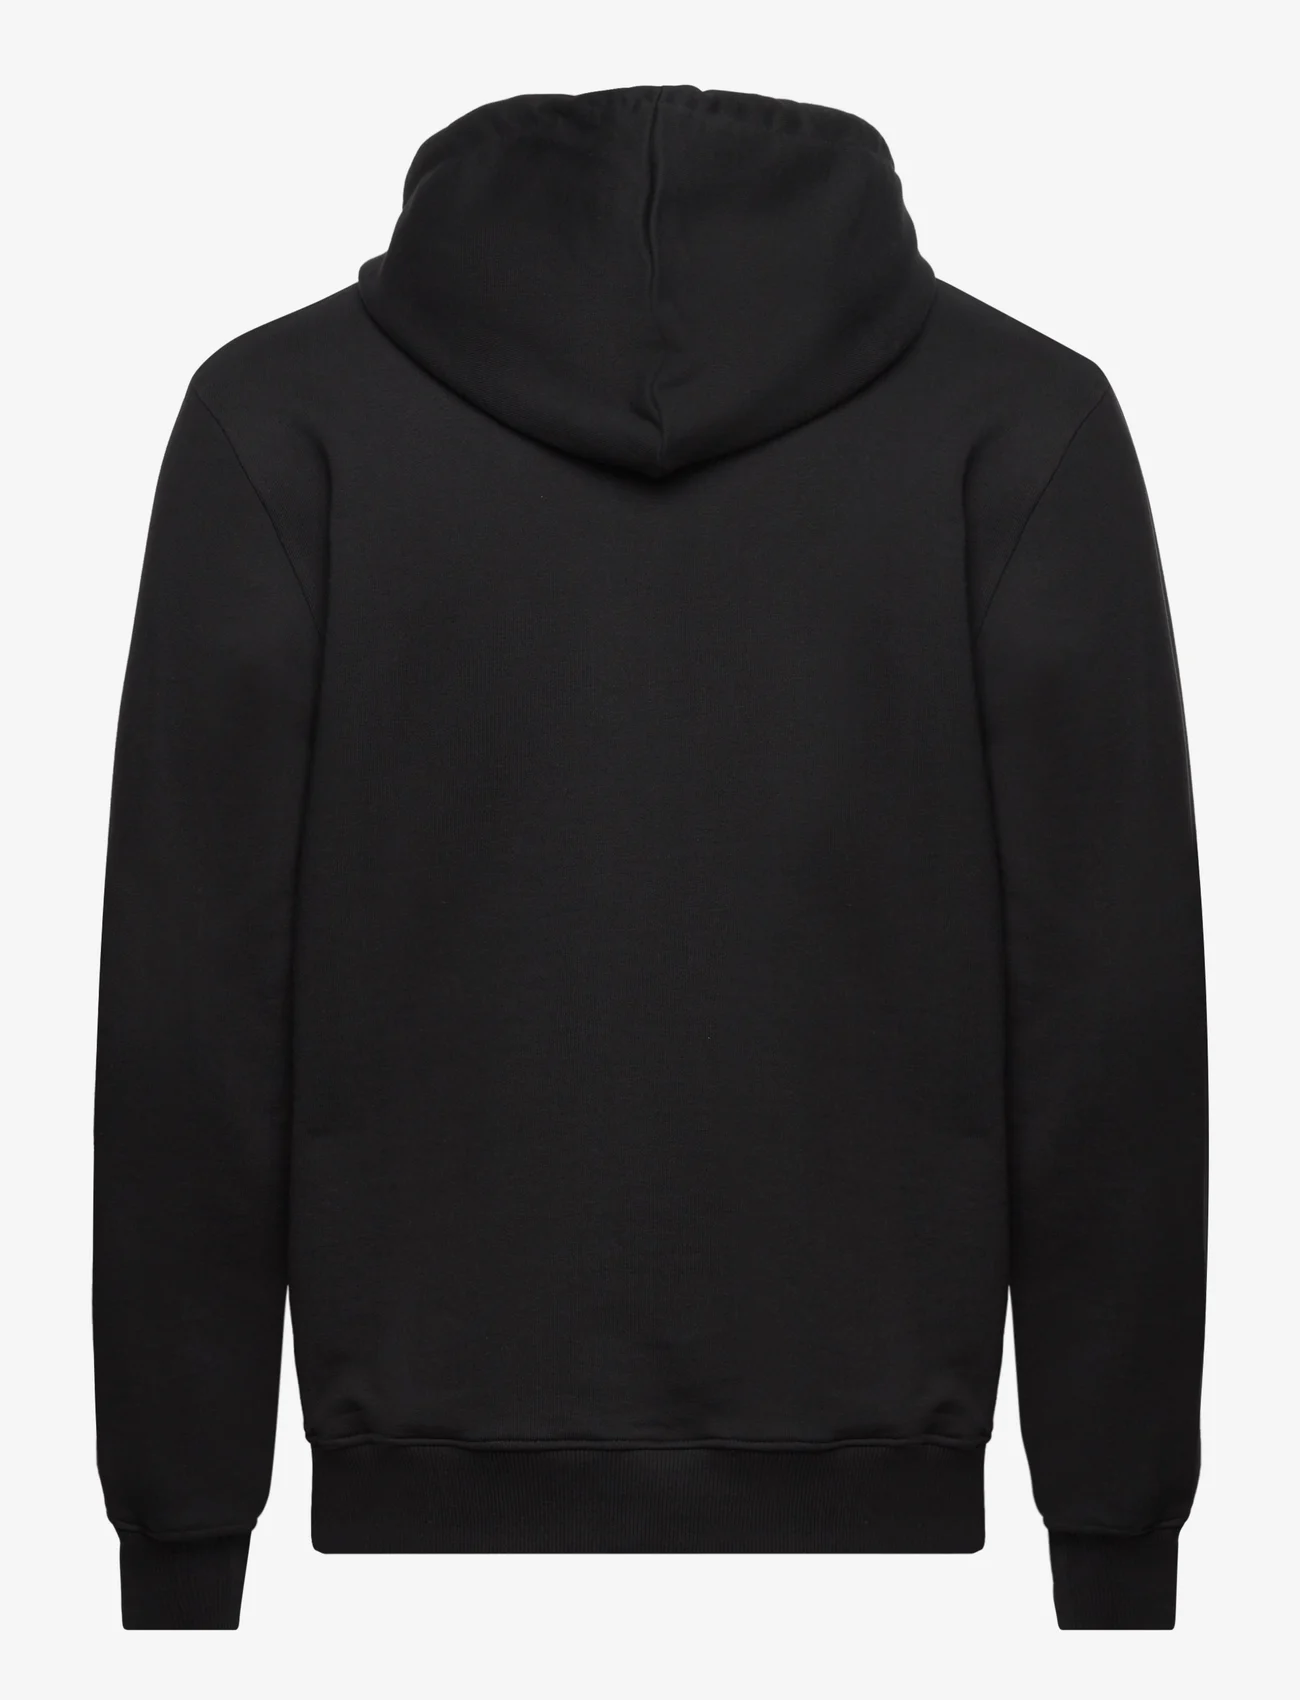 HAN Kjøbenhavn - Heart Monster Regular Hoodie - hoodies - black - 1